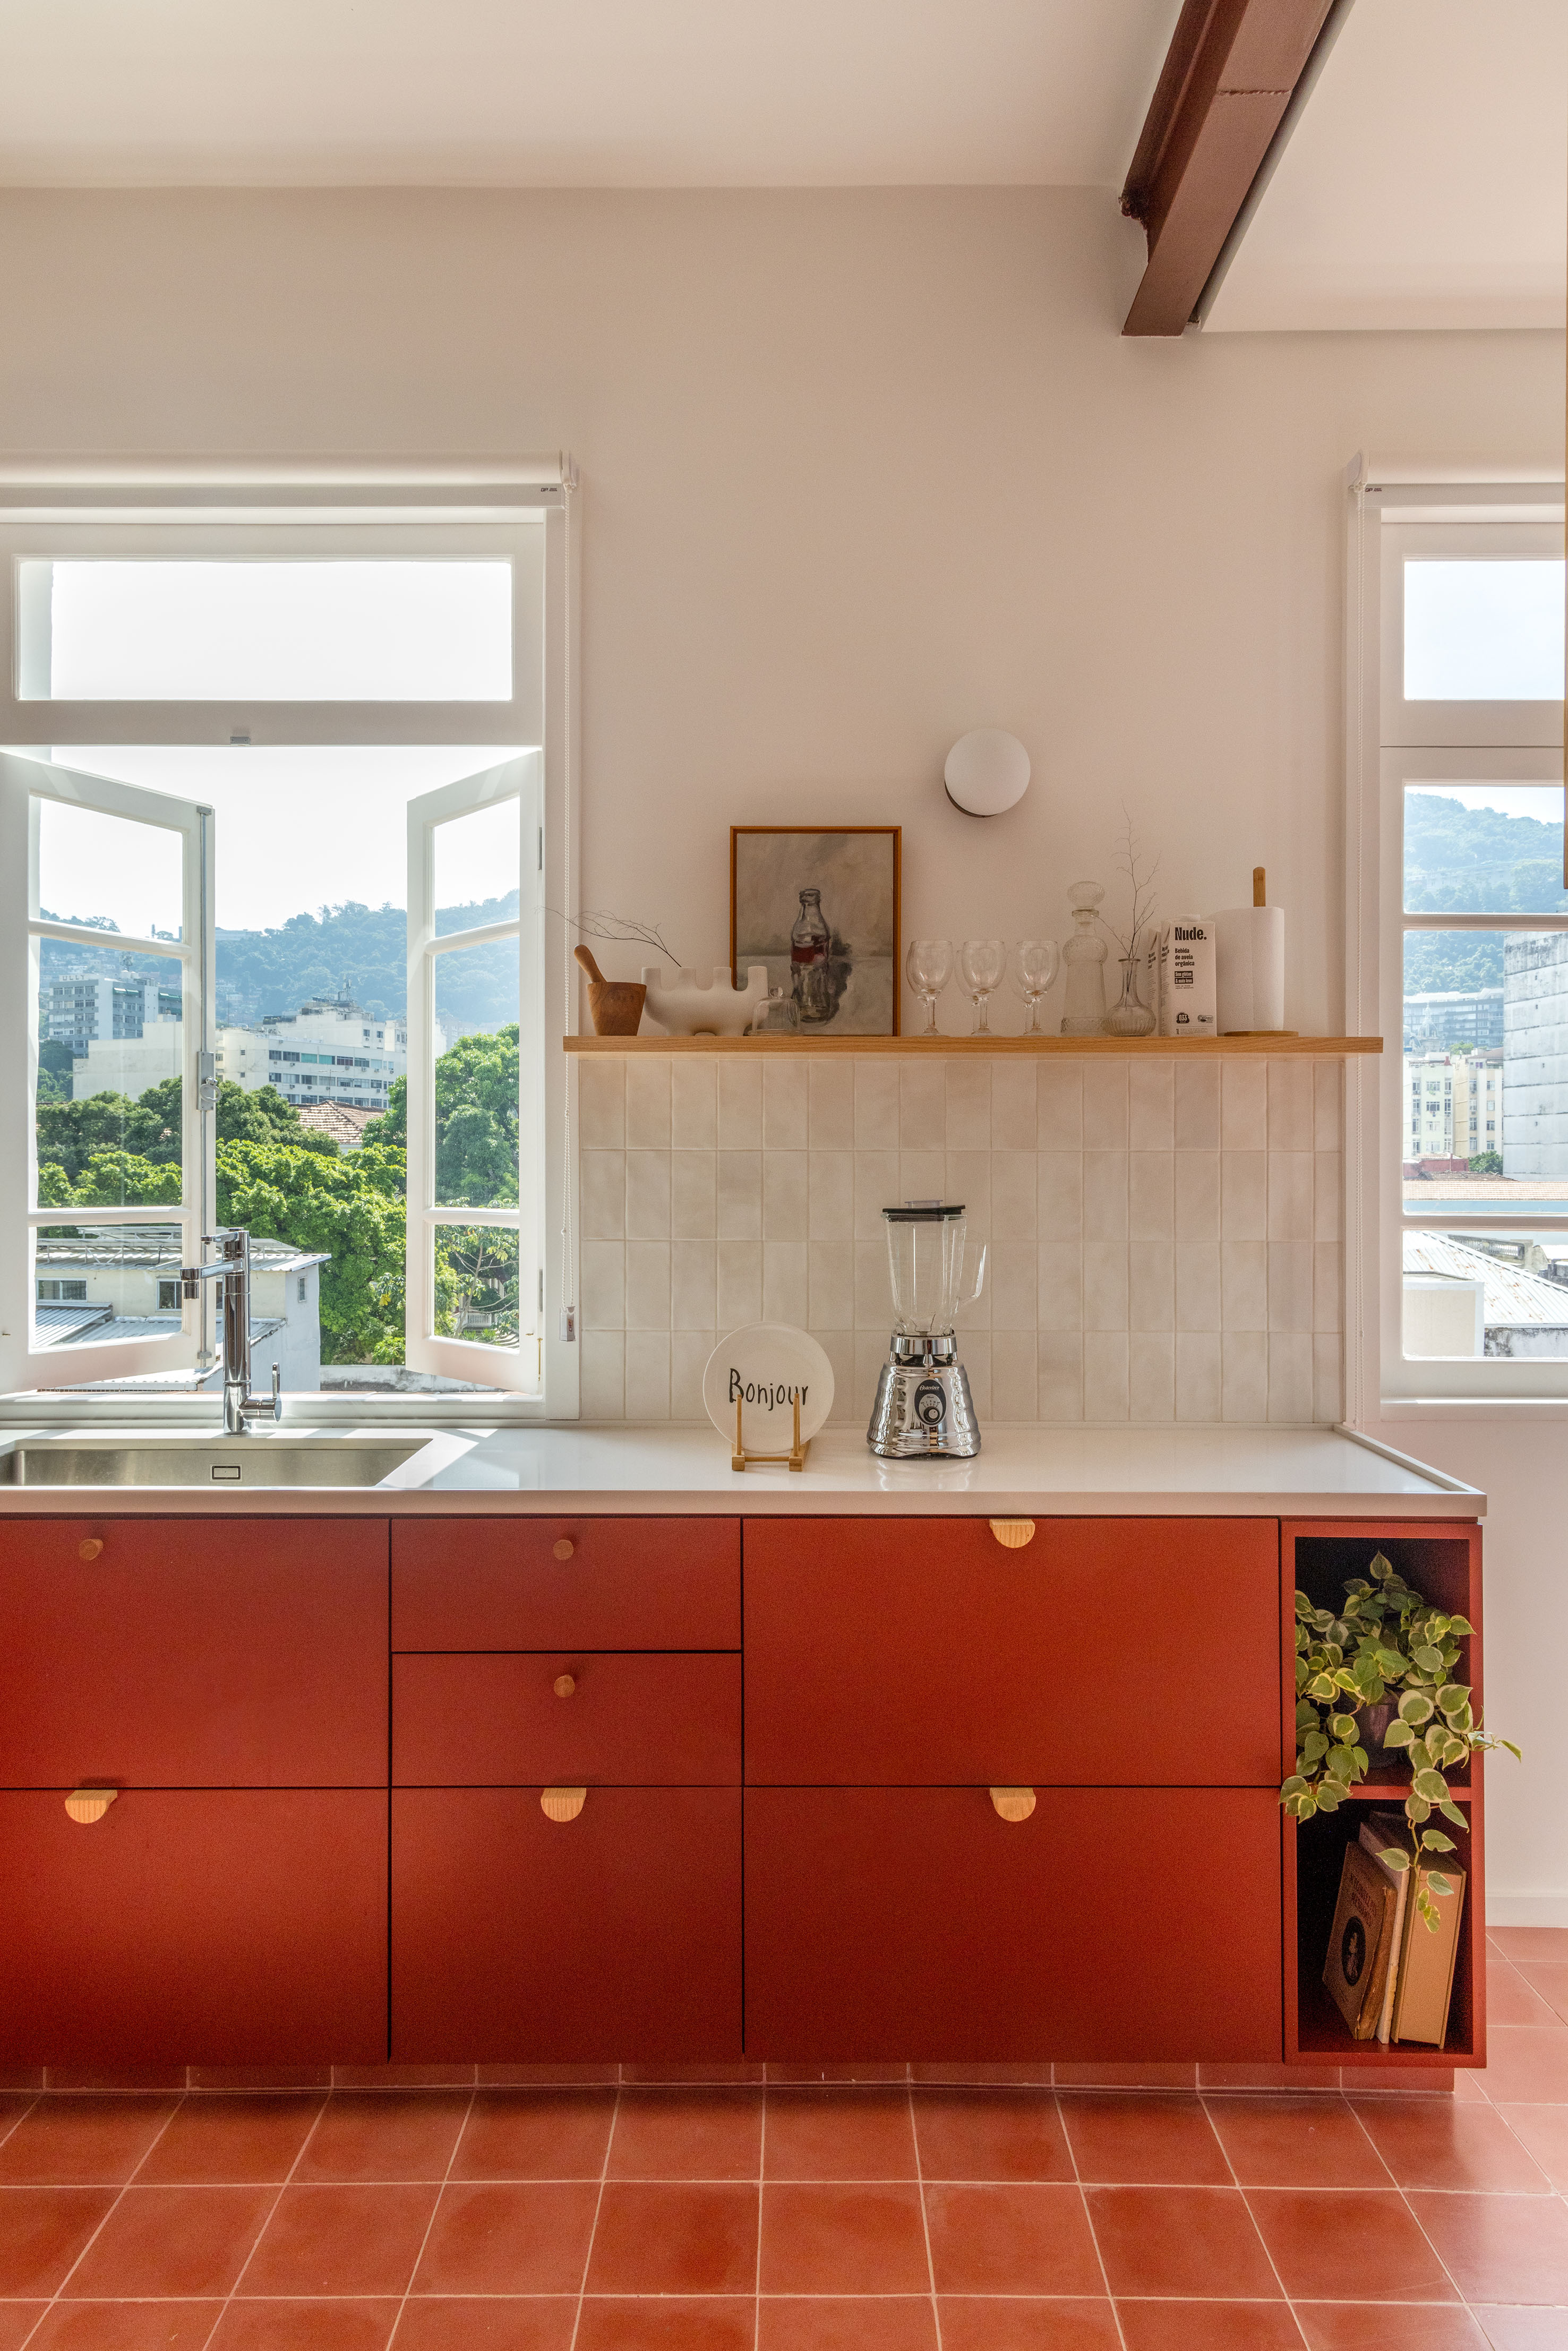 Ladrilhos hidráulicos trazem charme vintage e cor à apê de 90 m². Projeto de Ana Neri. Na foto, cozinha, armários terracota.